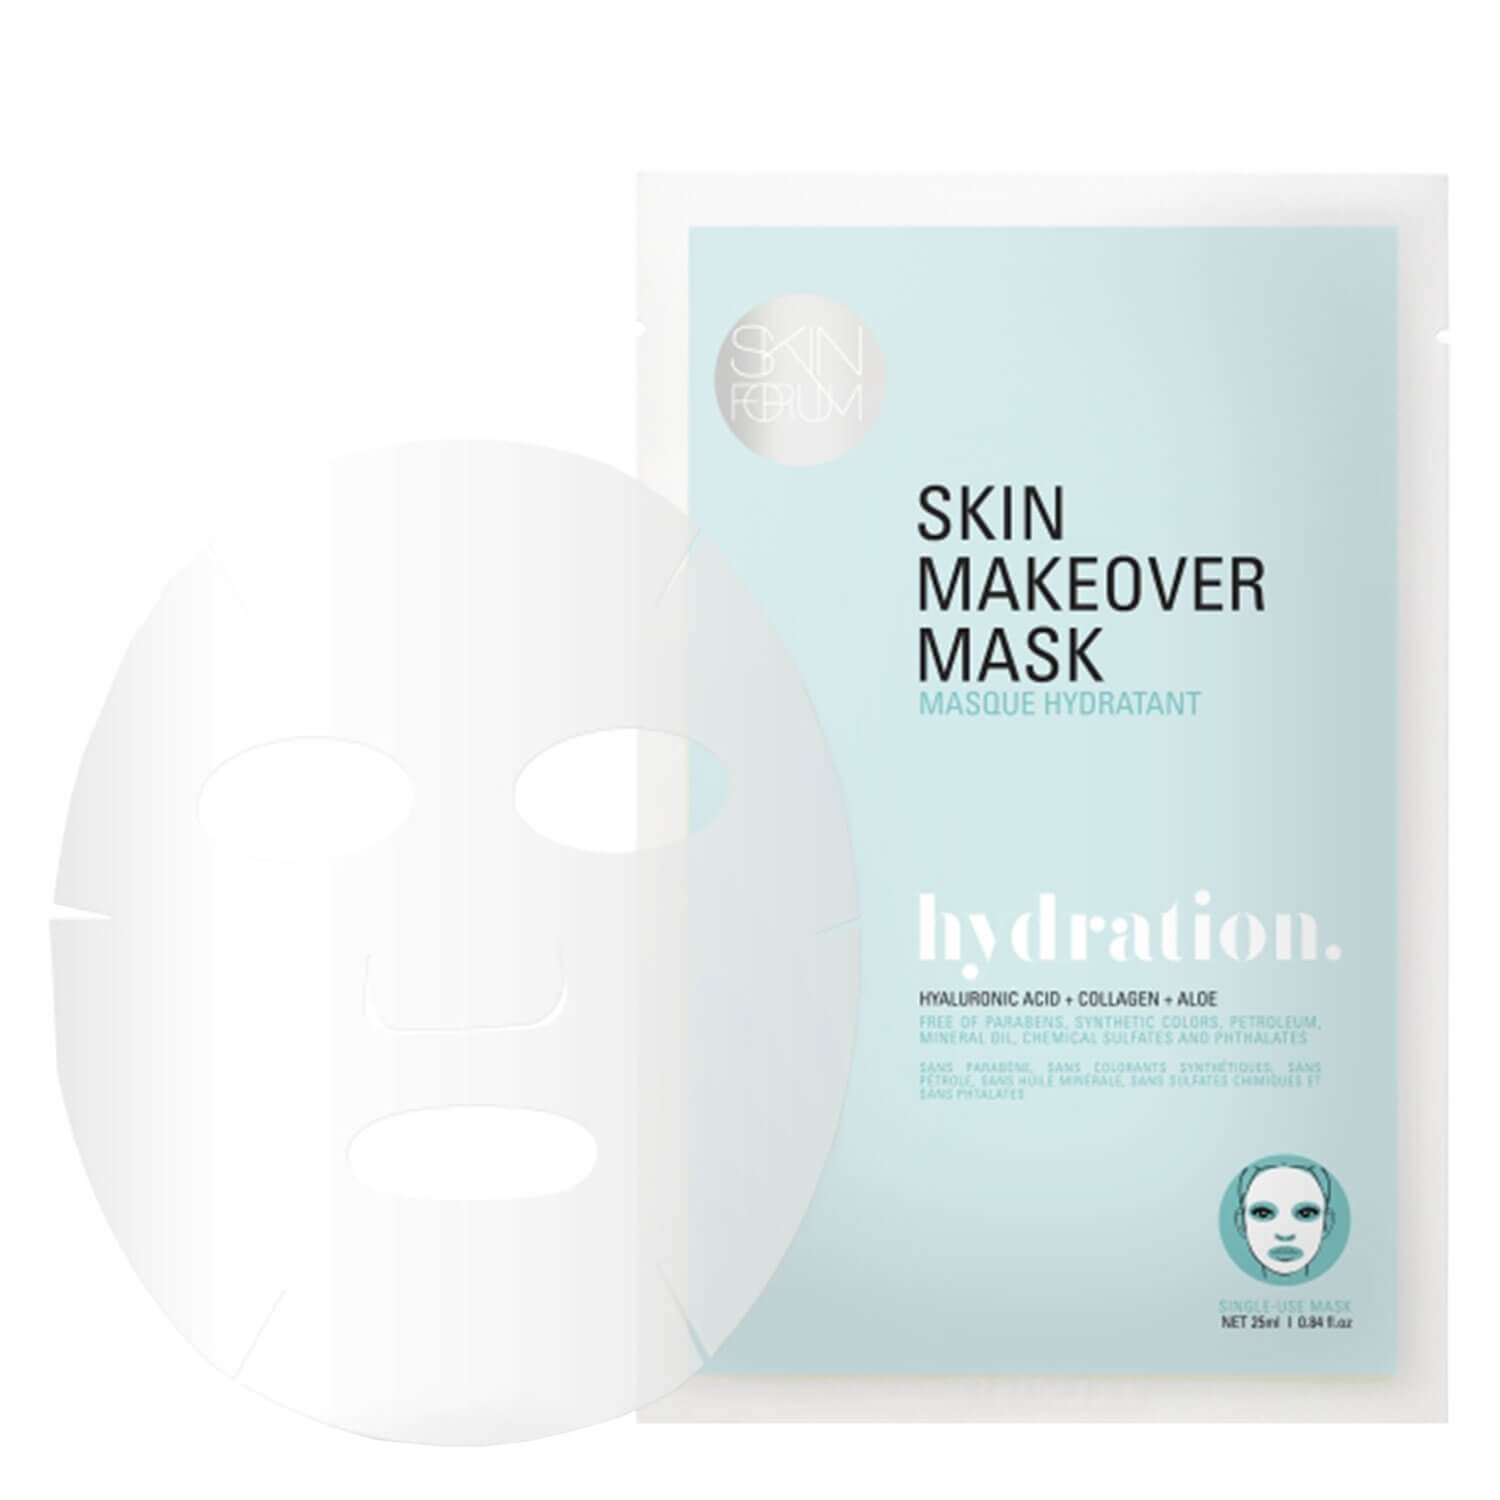 Produktbild von VOESH New York - Skin Makeover Mask hydration